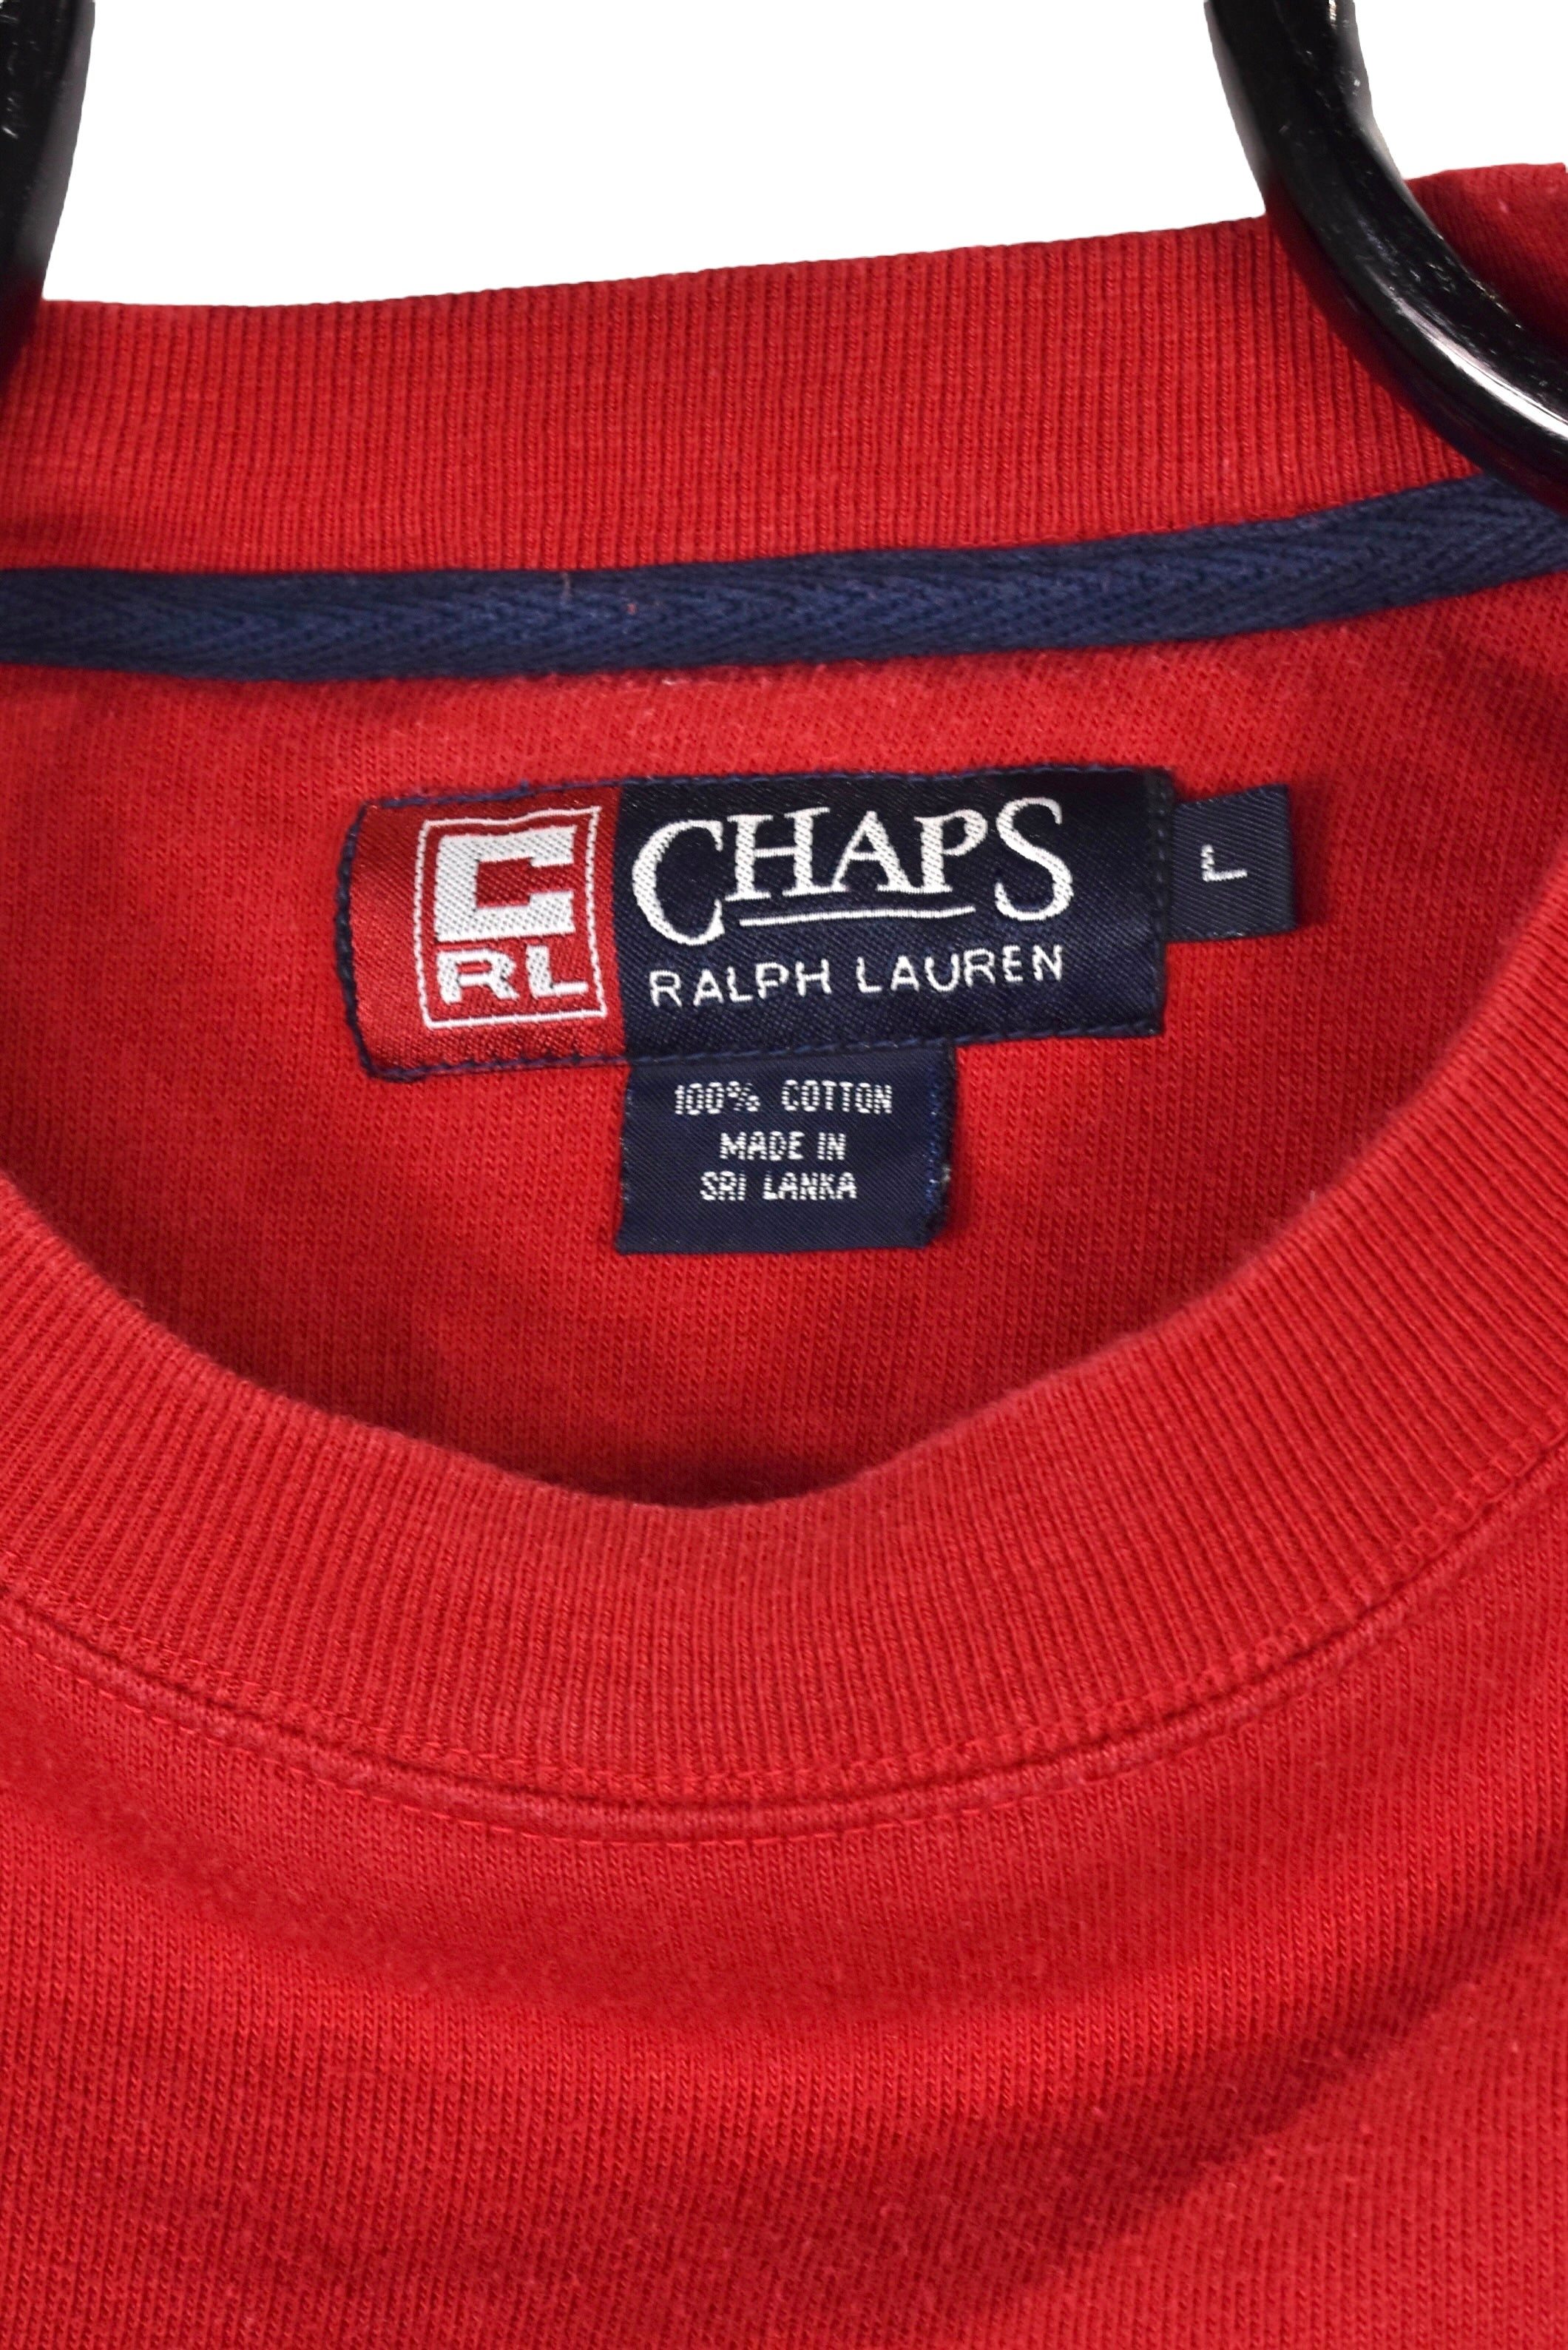 Vintage Ralph Lauren sweatshirt (XL), red embroidered crewneck